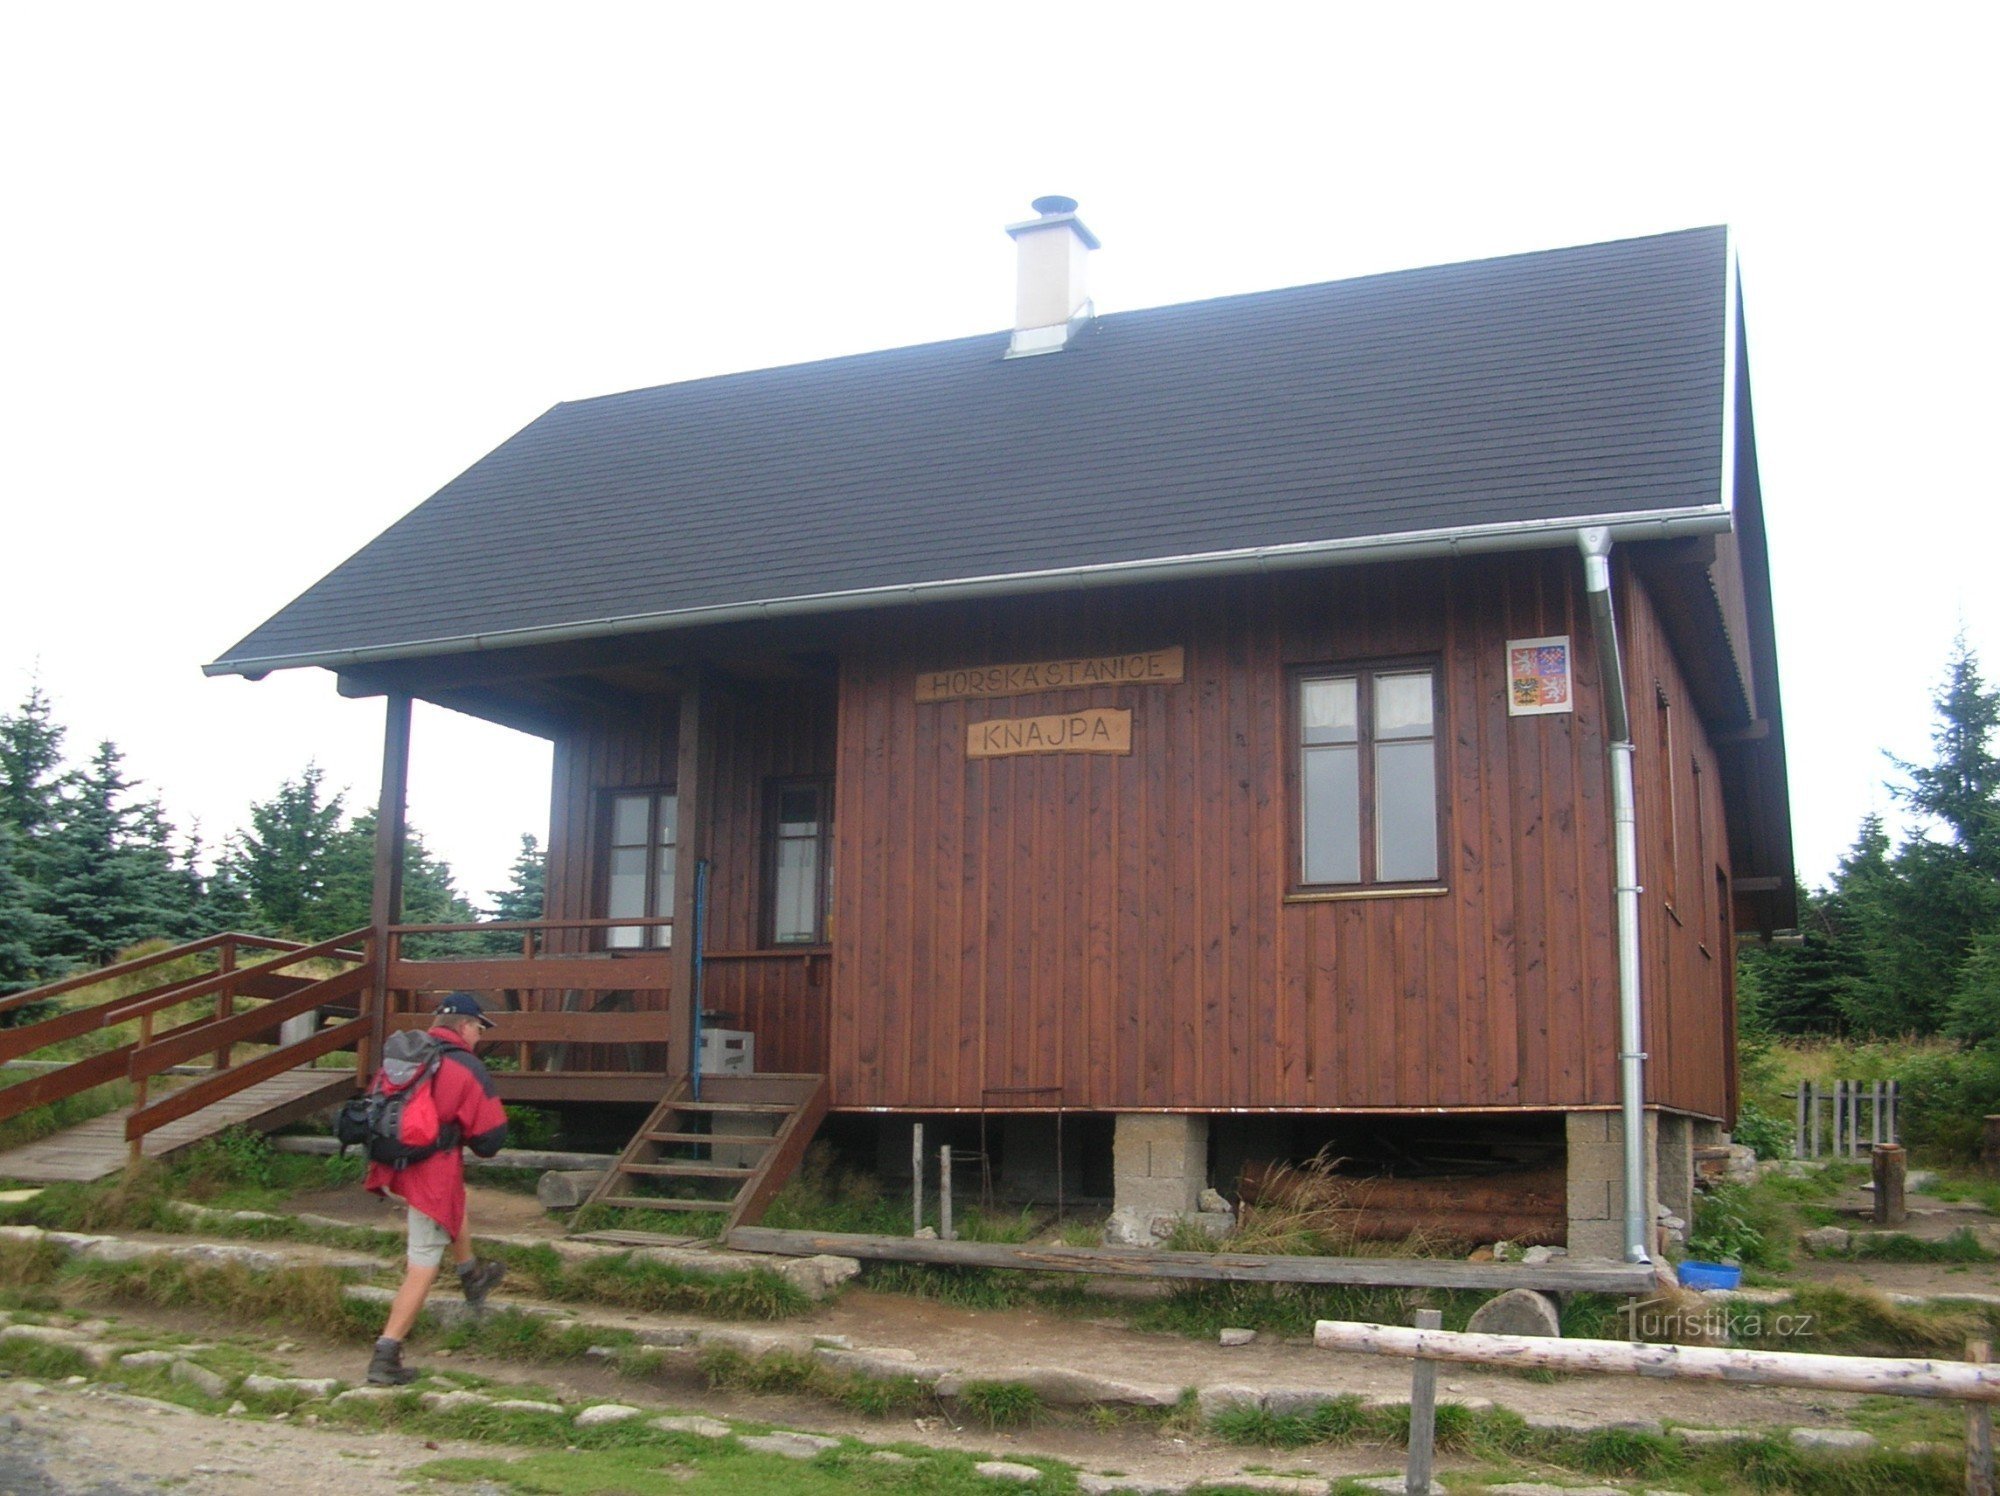 Stacja górska Knajpa